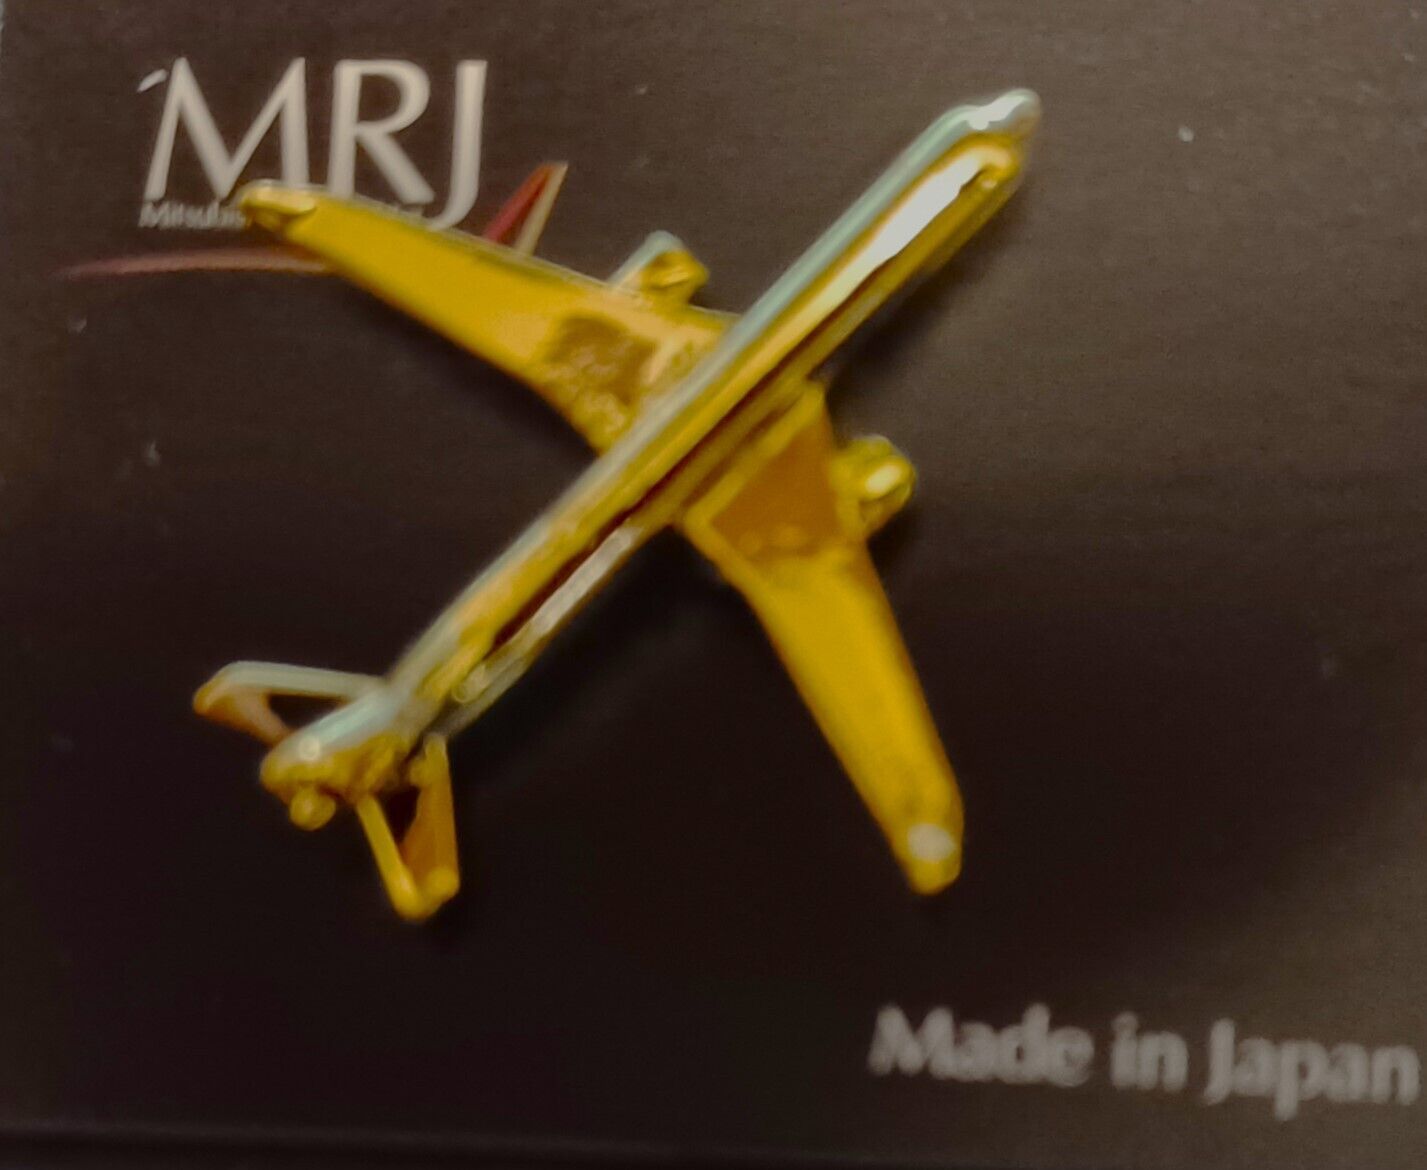 MRJ Regional Jet Airplane Manufacturer Mitsubishi Lapel Pin on card